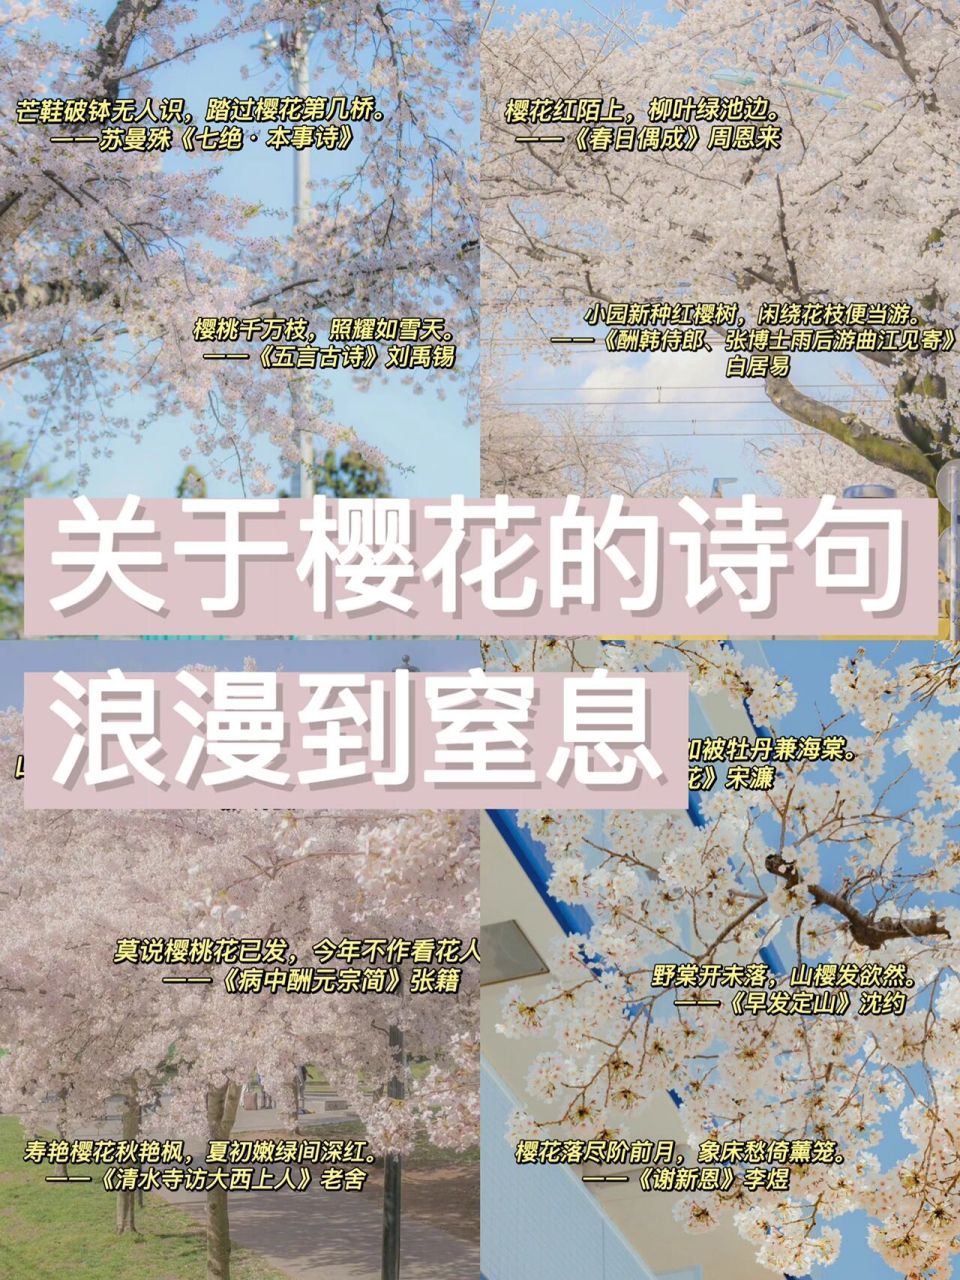 樱花花语唯美句子图片